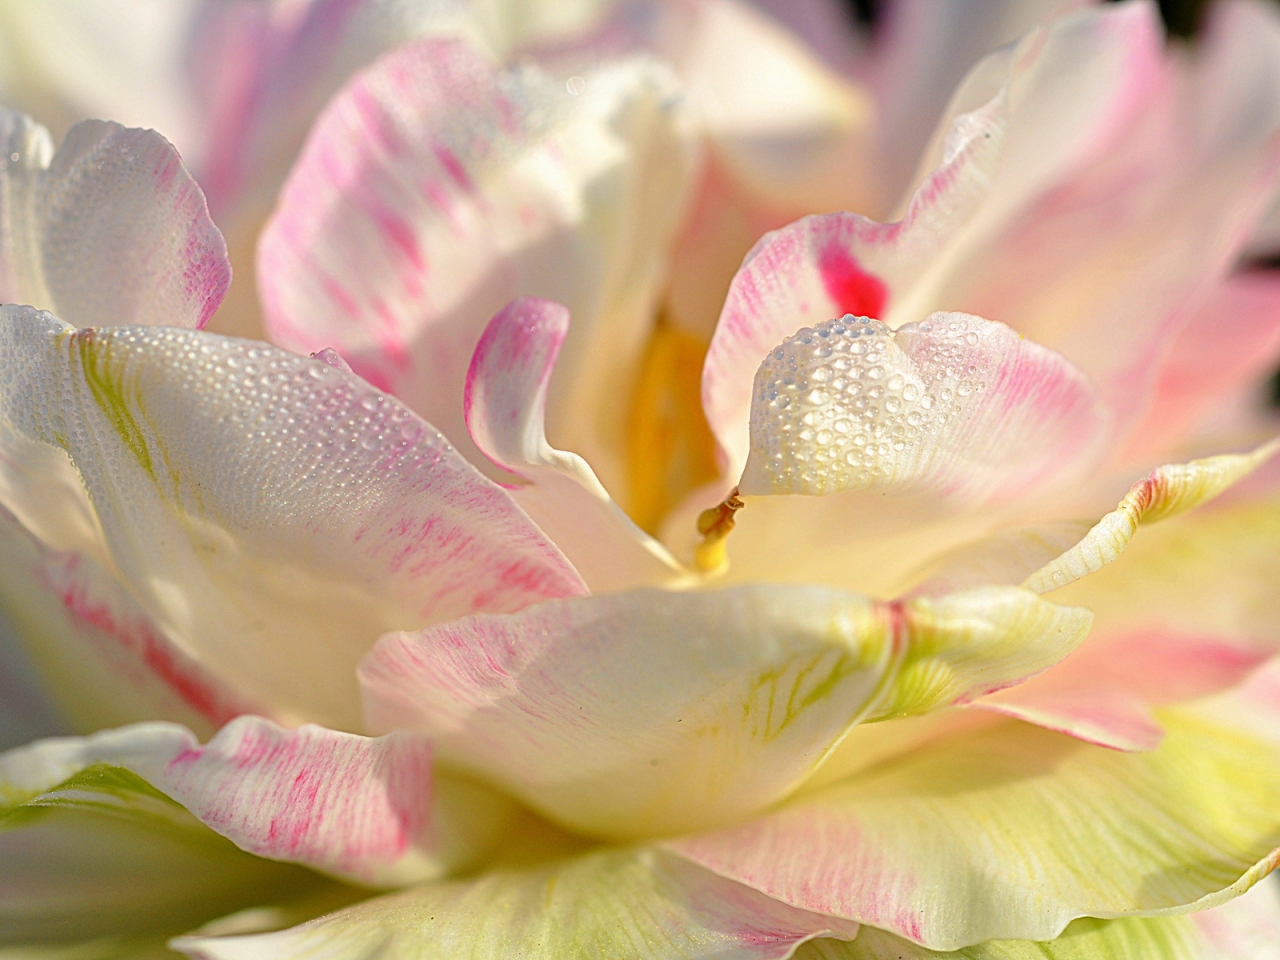 Magnolia Petals for 1280 x 960 resolution